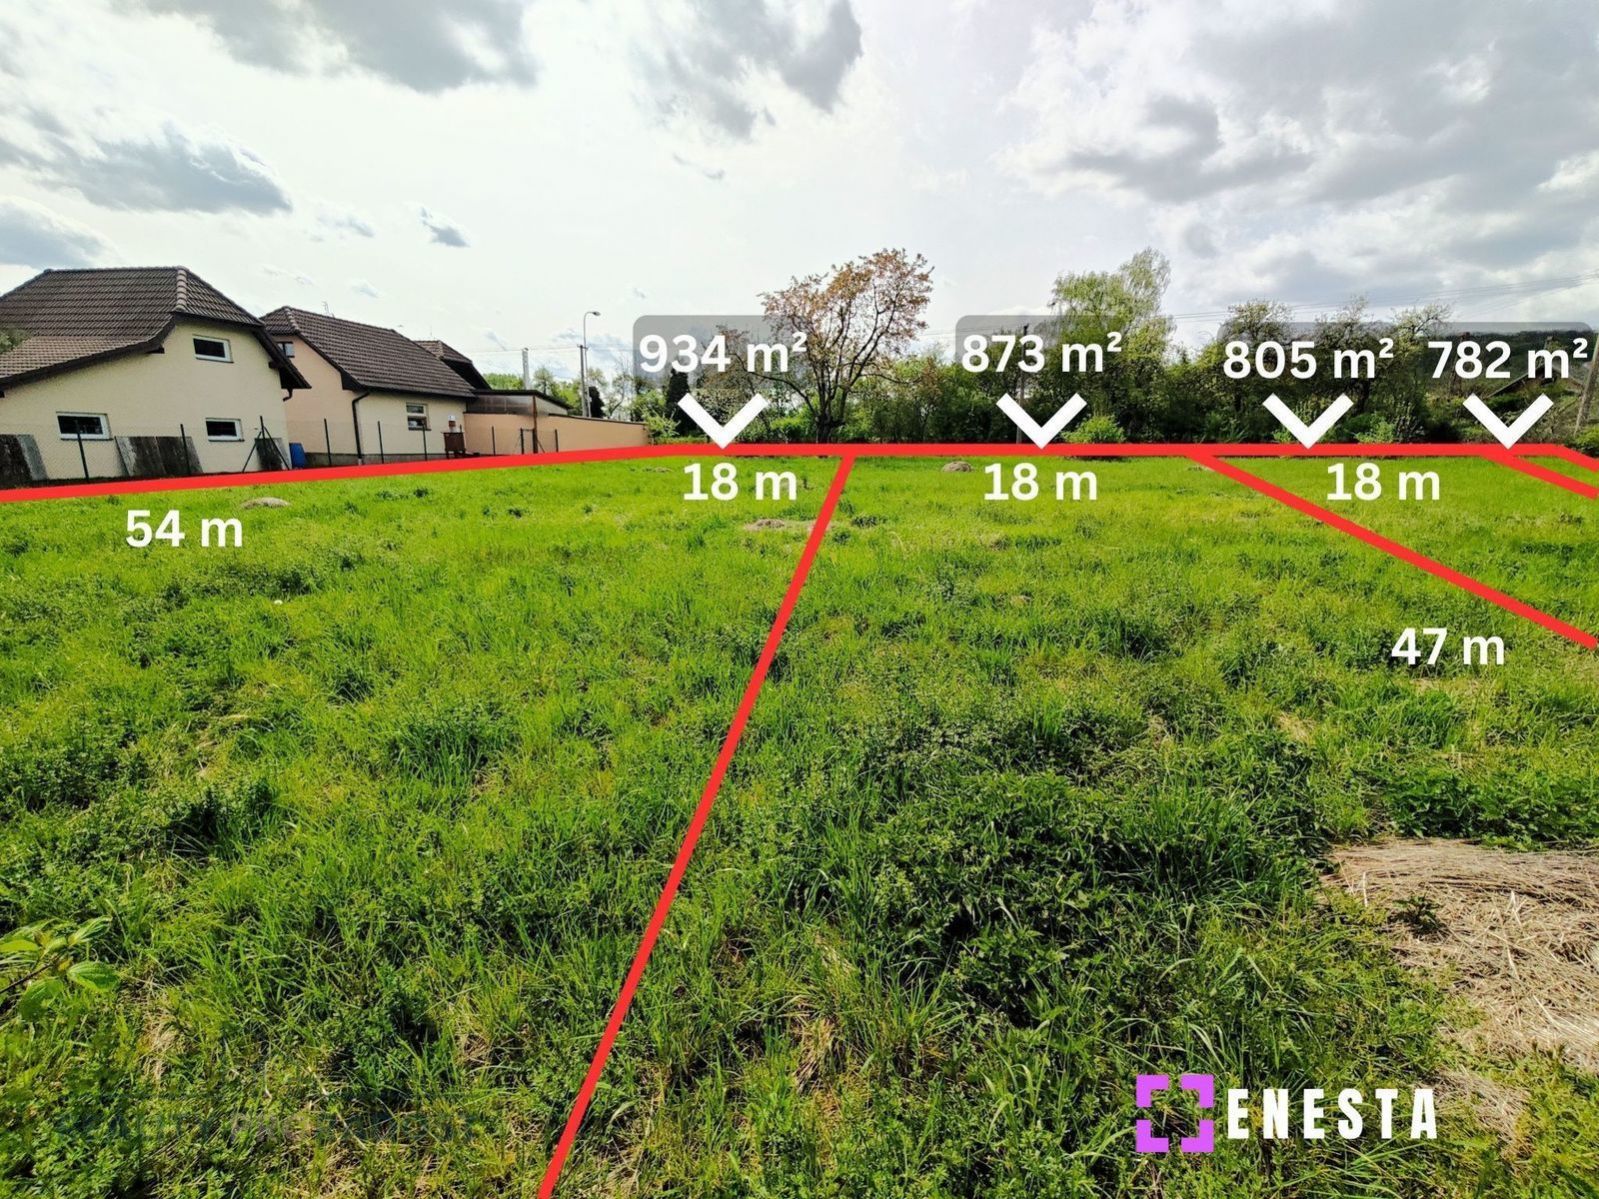 Stavební pozemky o výměře od 782 m2 do 934 m2 Kutná Hora-Malín, obrázek č. 2